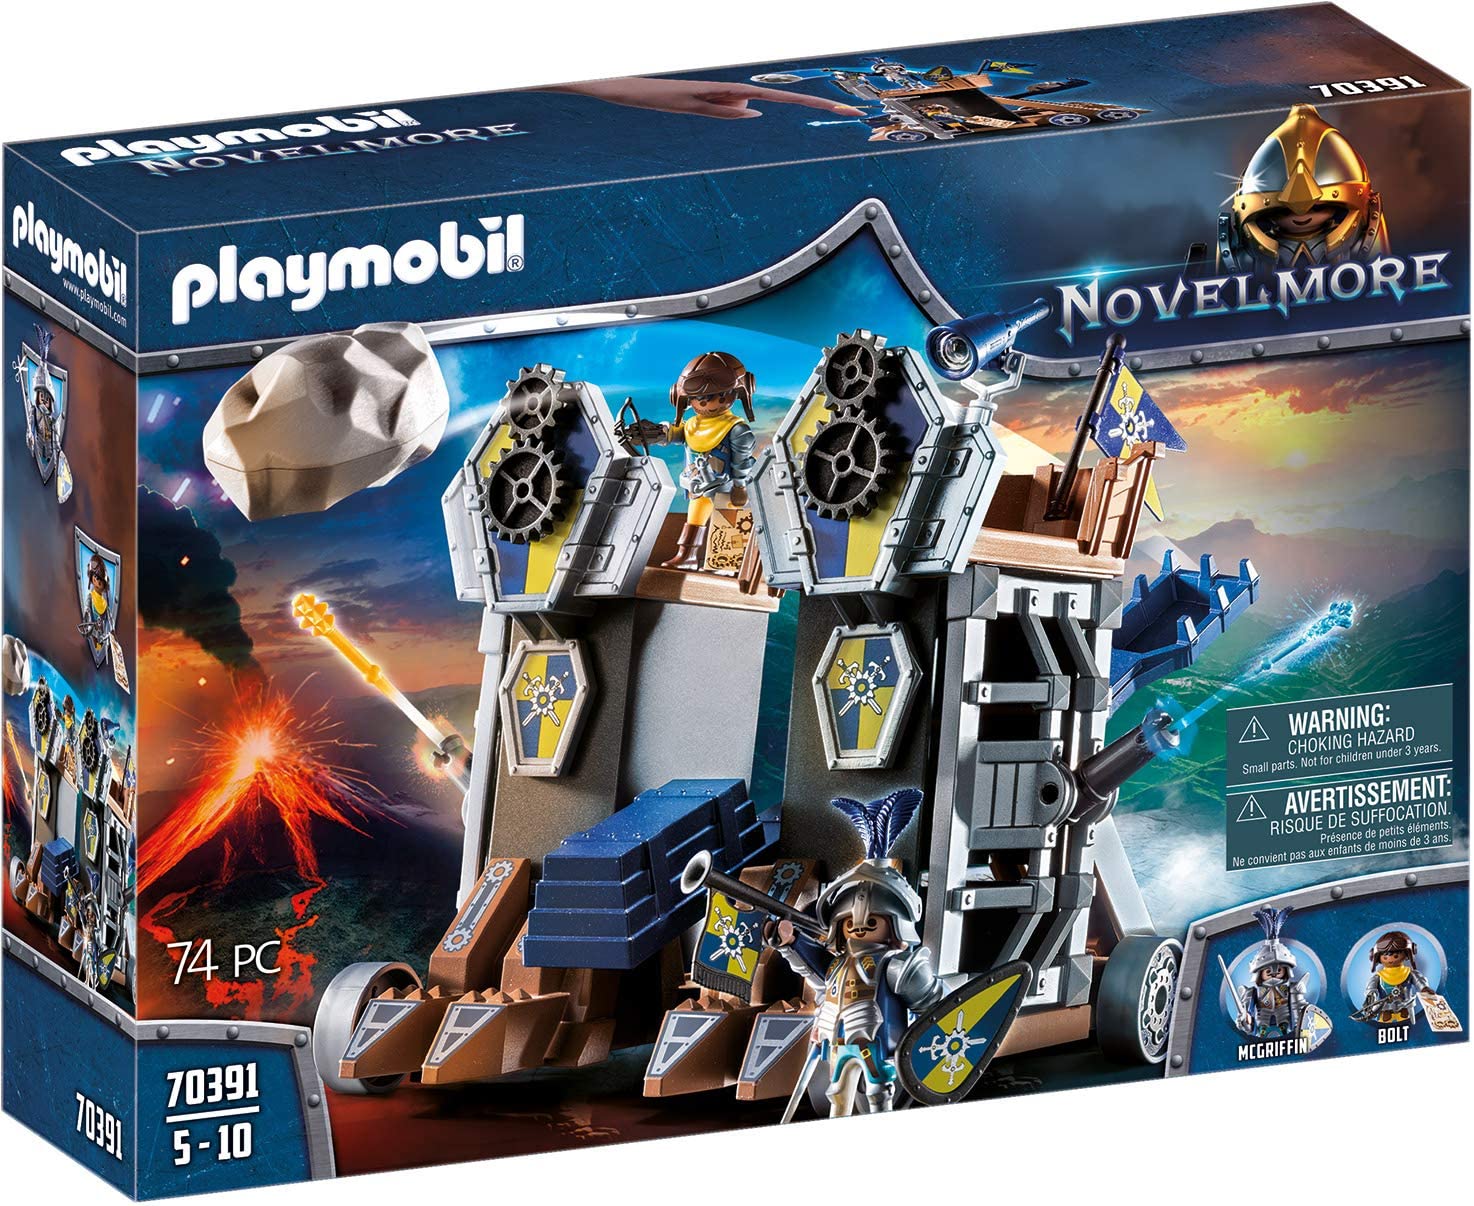 PLAYMOBIL Novelmore 70391 Mobile Catapult Castle for Children Aged 4-10 Yea